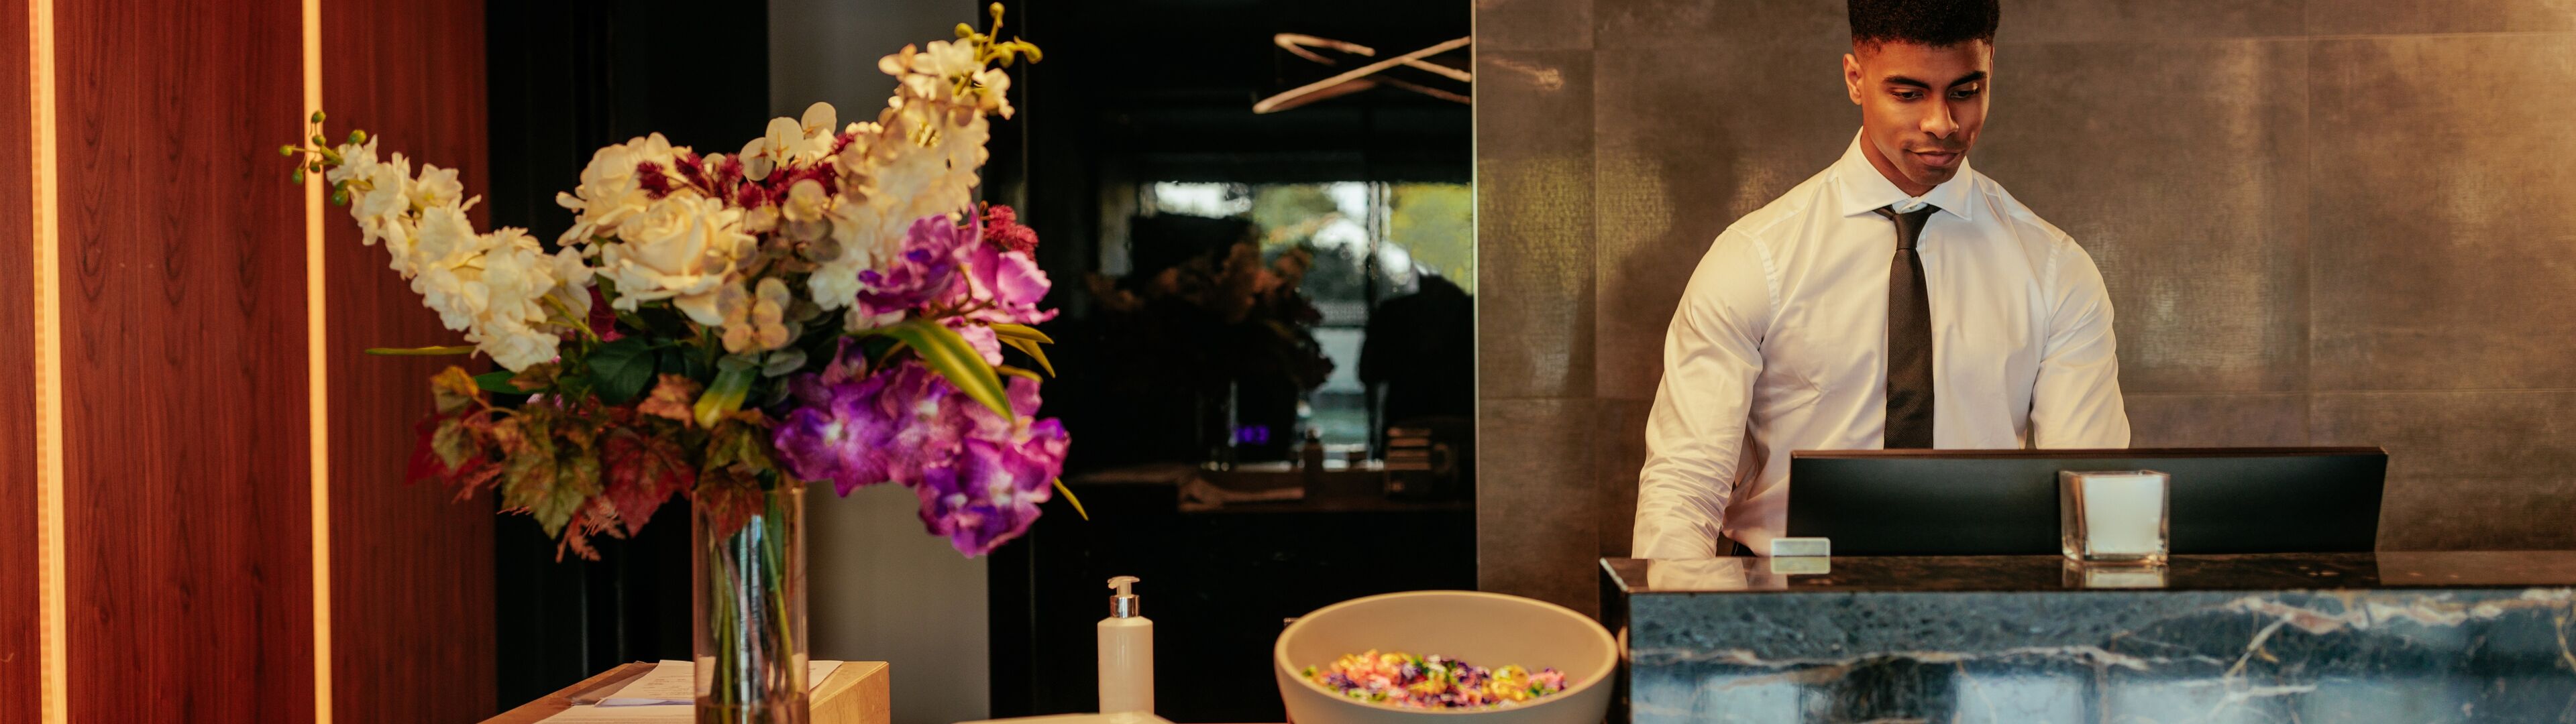 Un réceptionniste homme professionnel travaille à la réception moderne d'un hôtel, avec des arrangements floraux élégants et un éclairage stylé en arrière-plan.